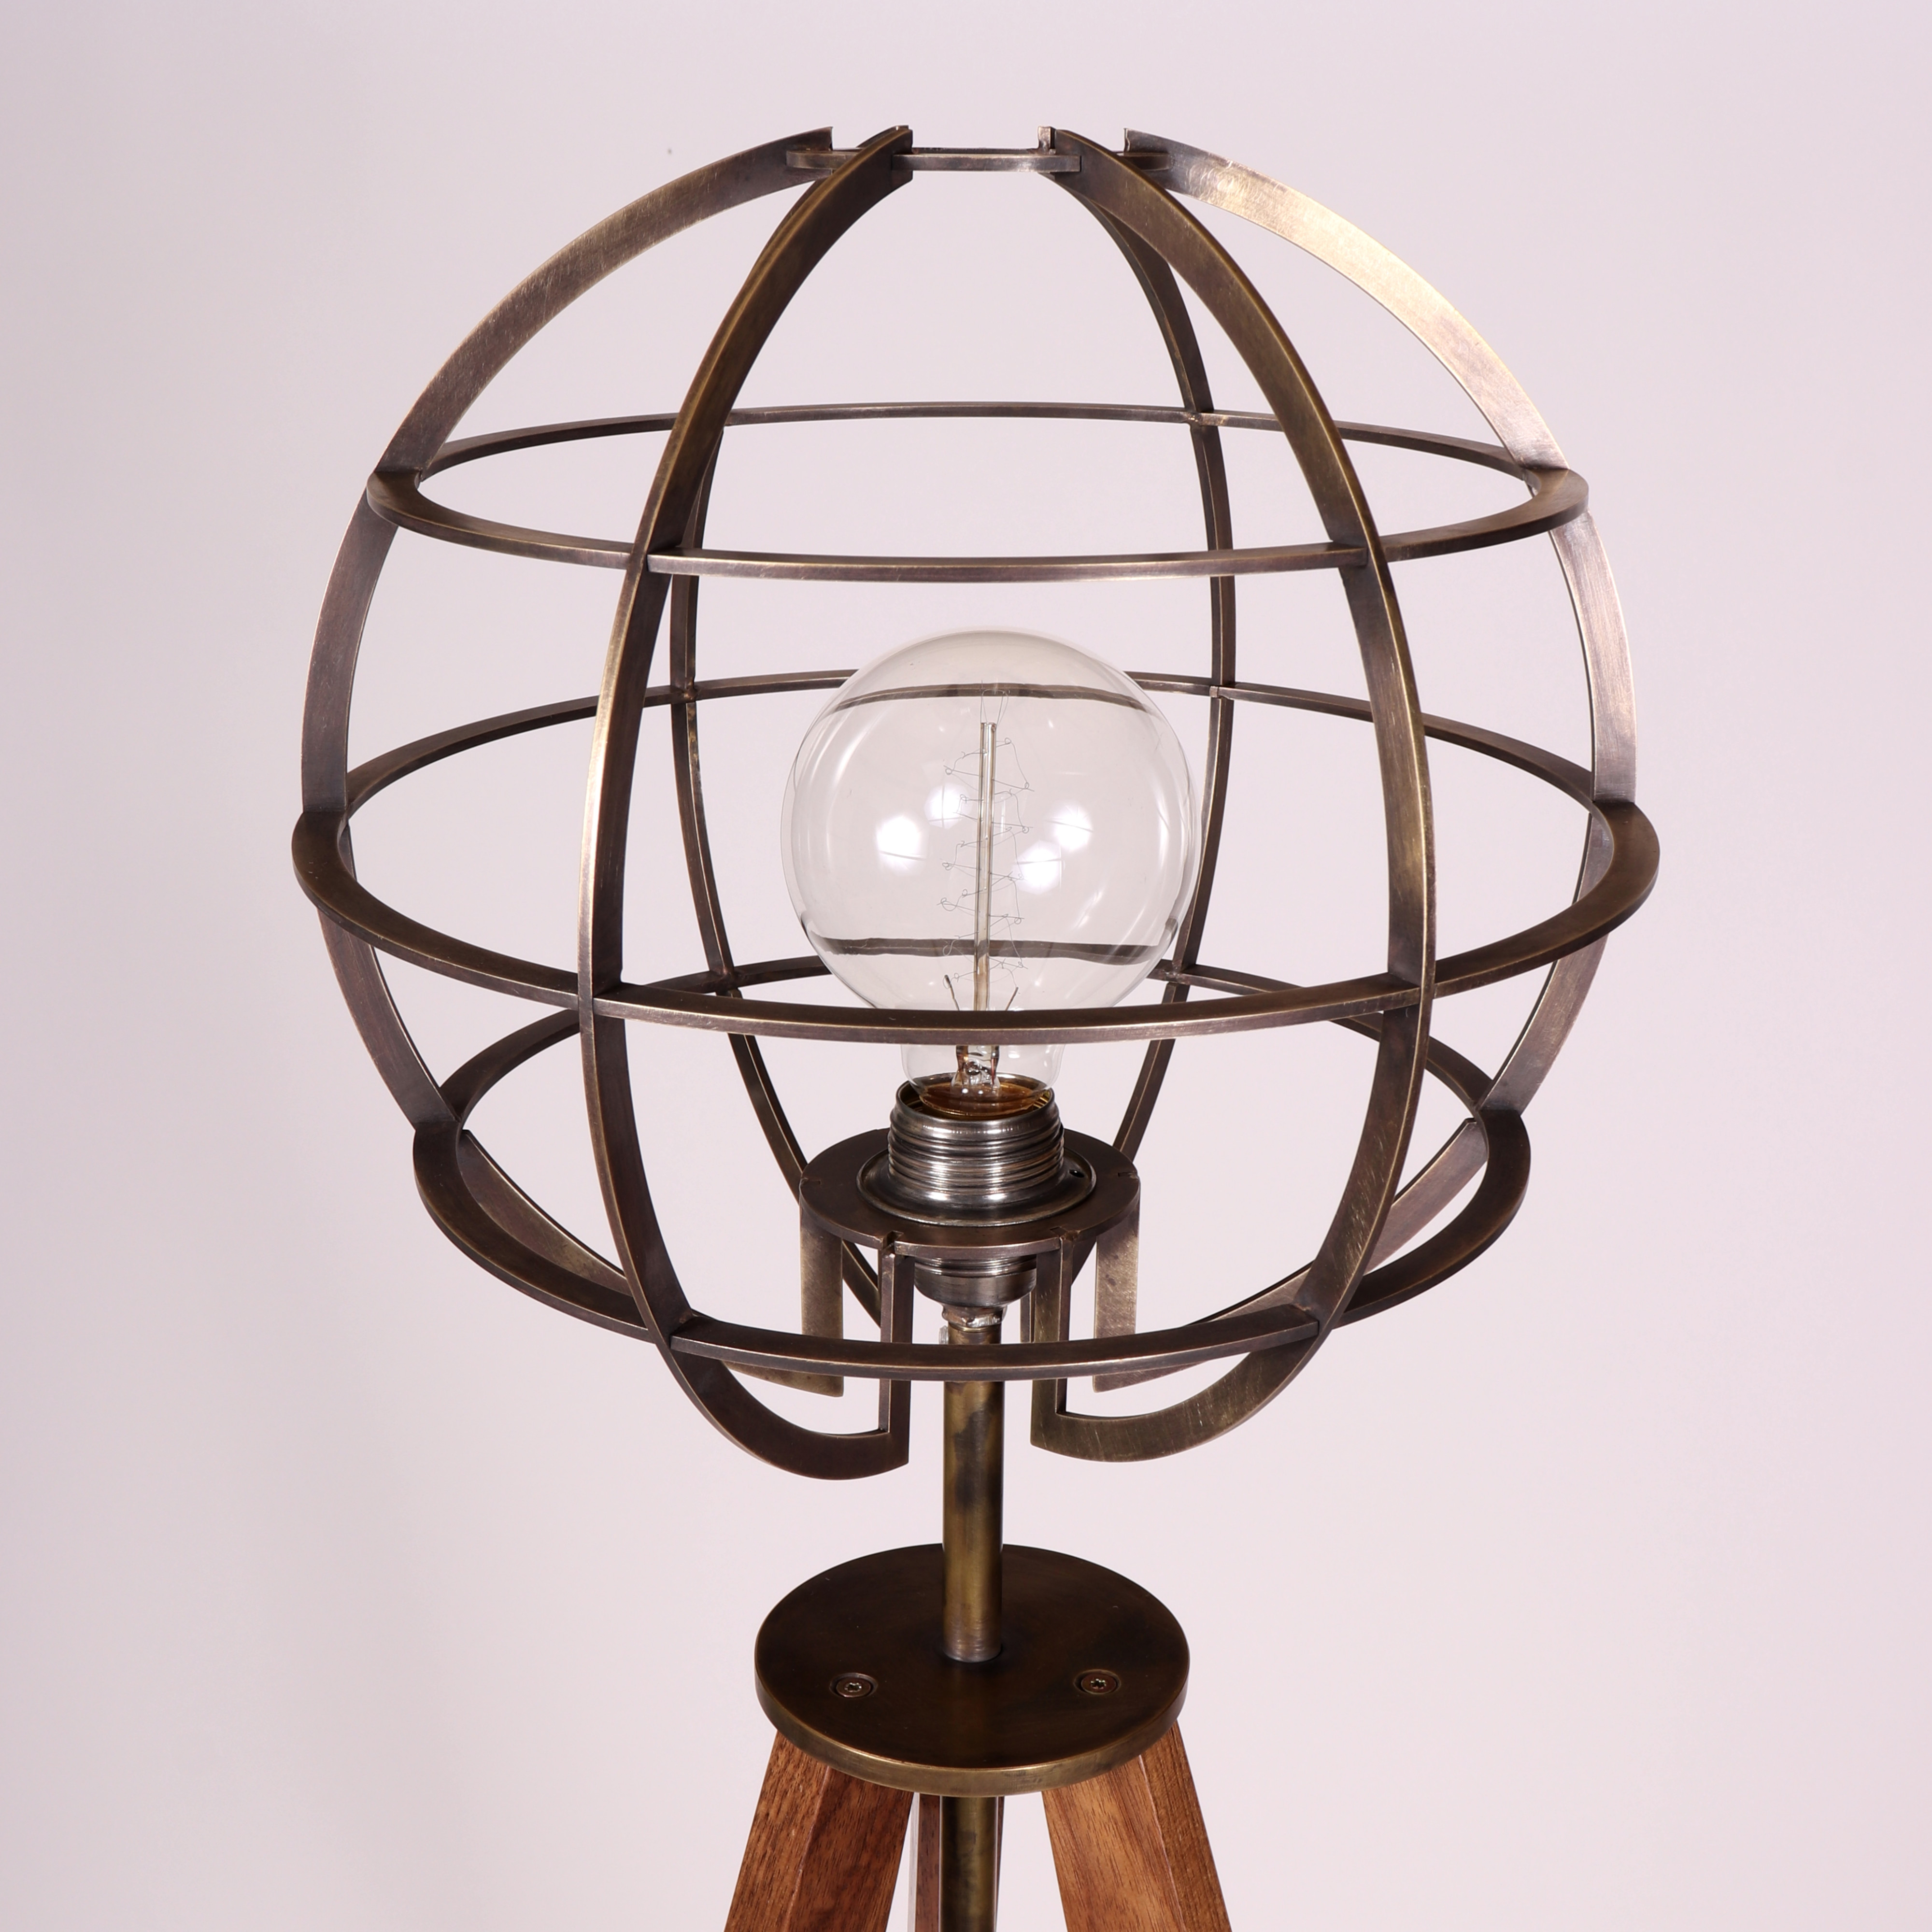 Tripodlampe Nussbaum Holz Messing Dreinbein Vintage Globe Loft